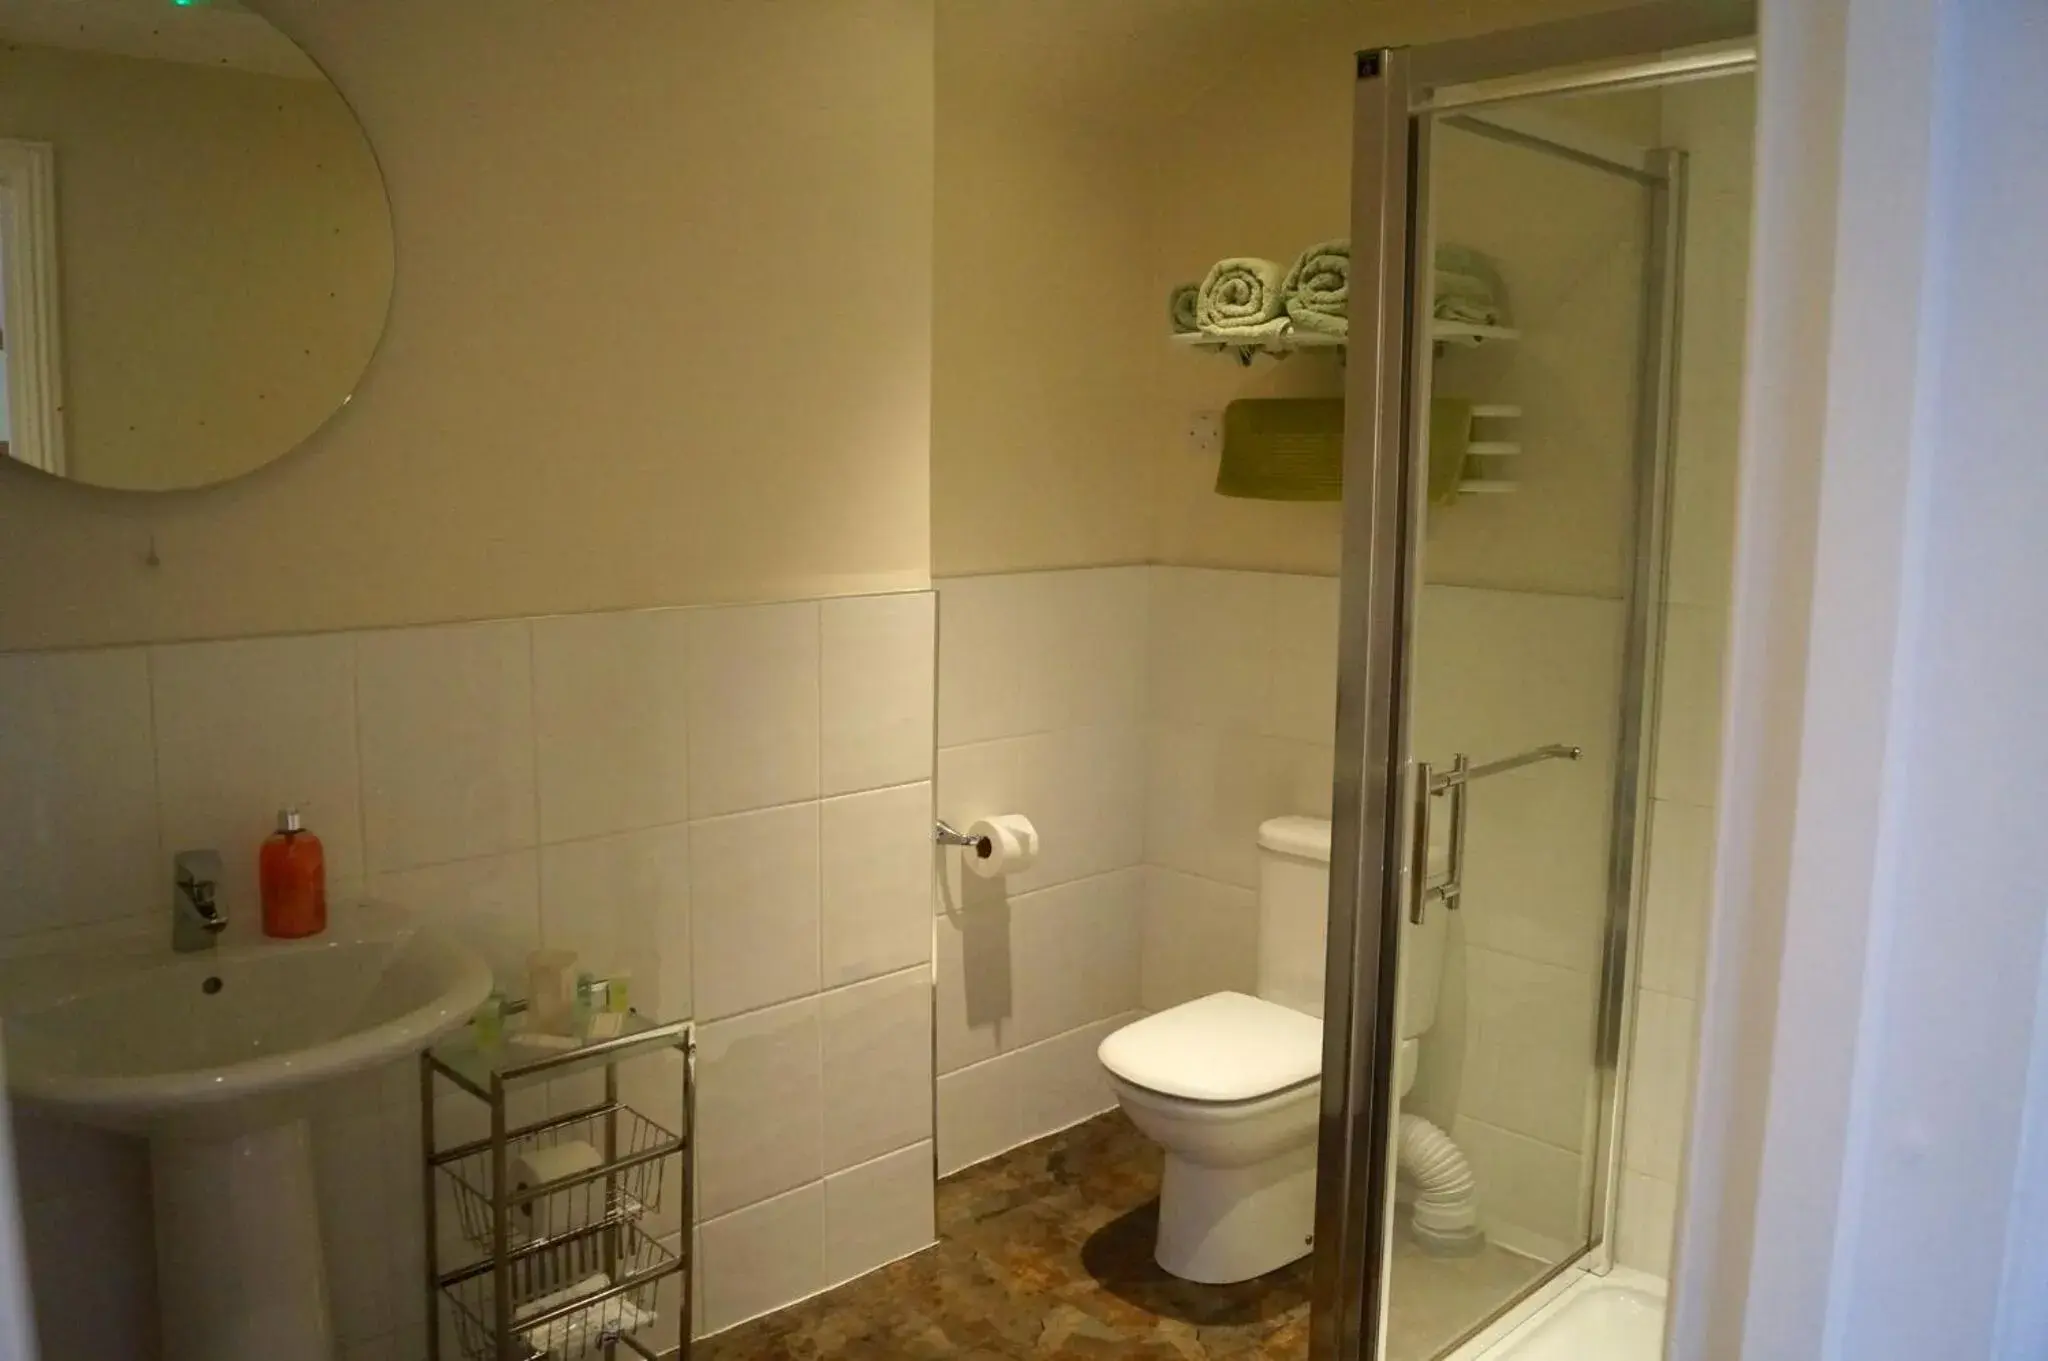 Bathroom in The Arun View Inn